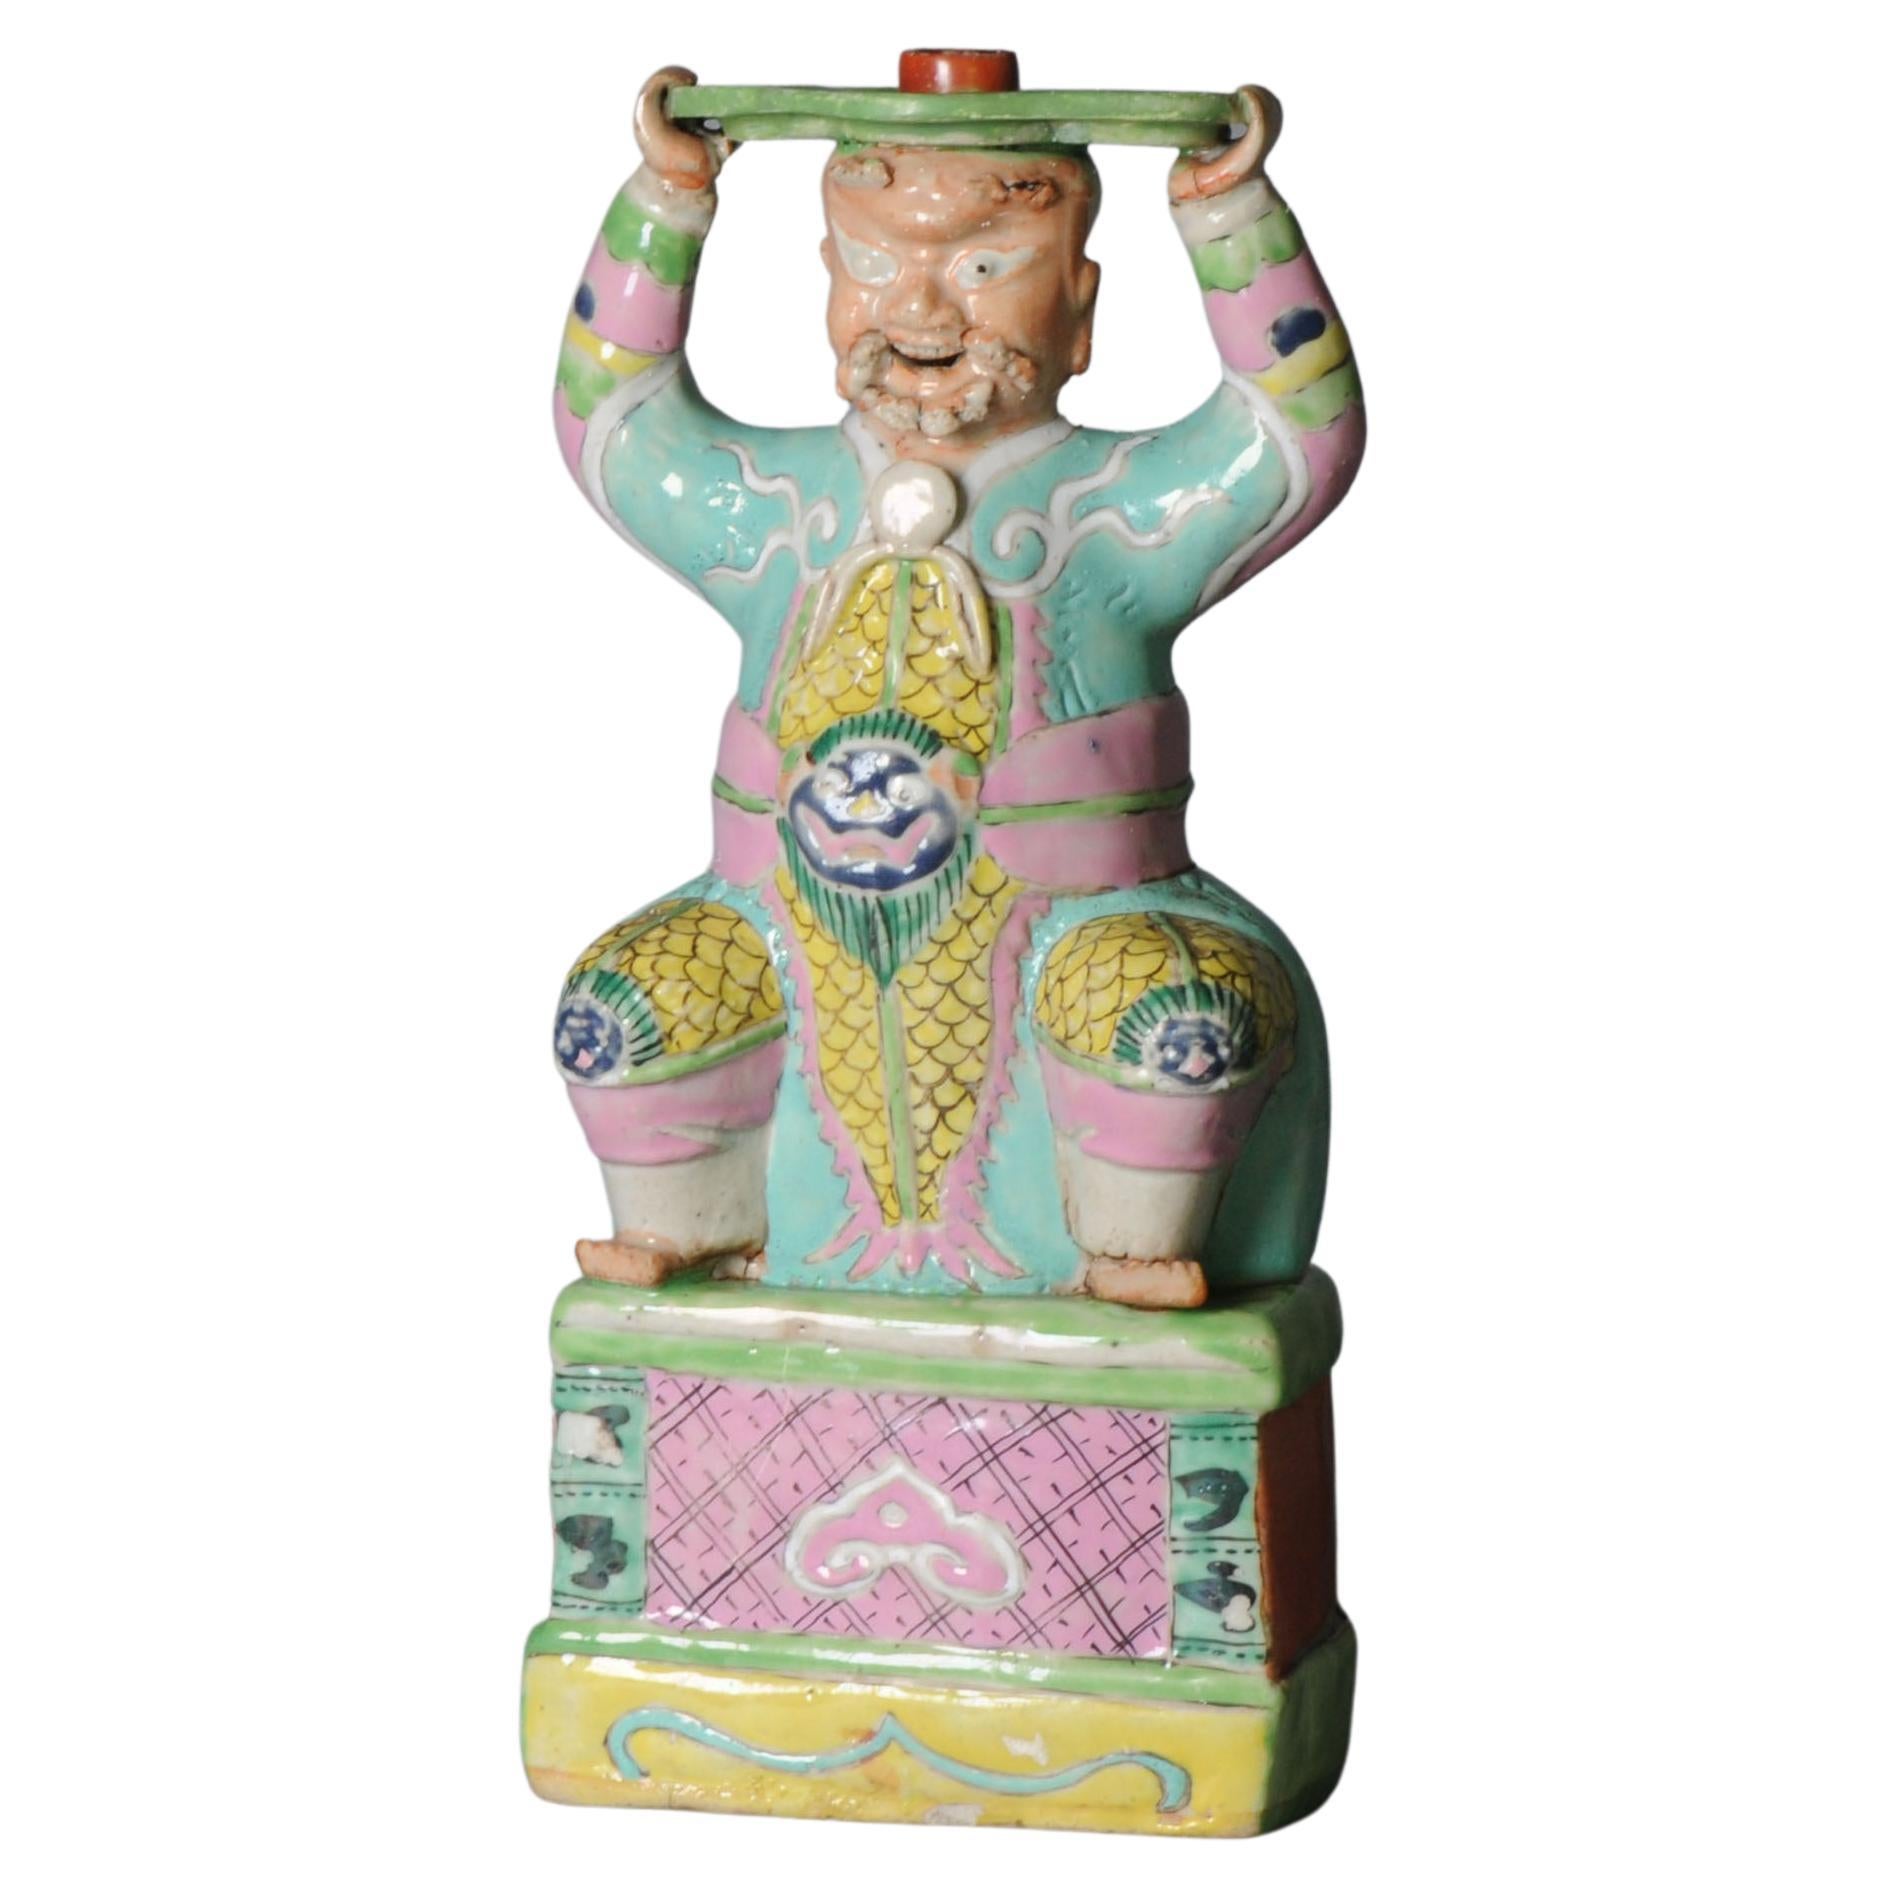 Antiker chinesischer Kerzenständer mit chinesischer Statue aus Porzellanfigur aus dem 18. Jahrhundert